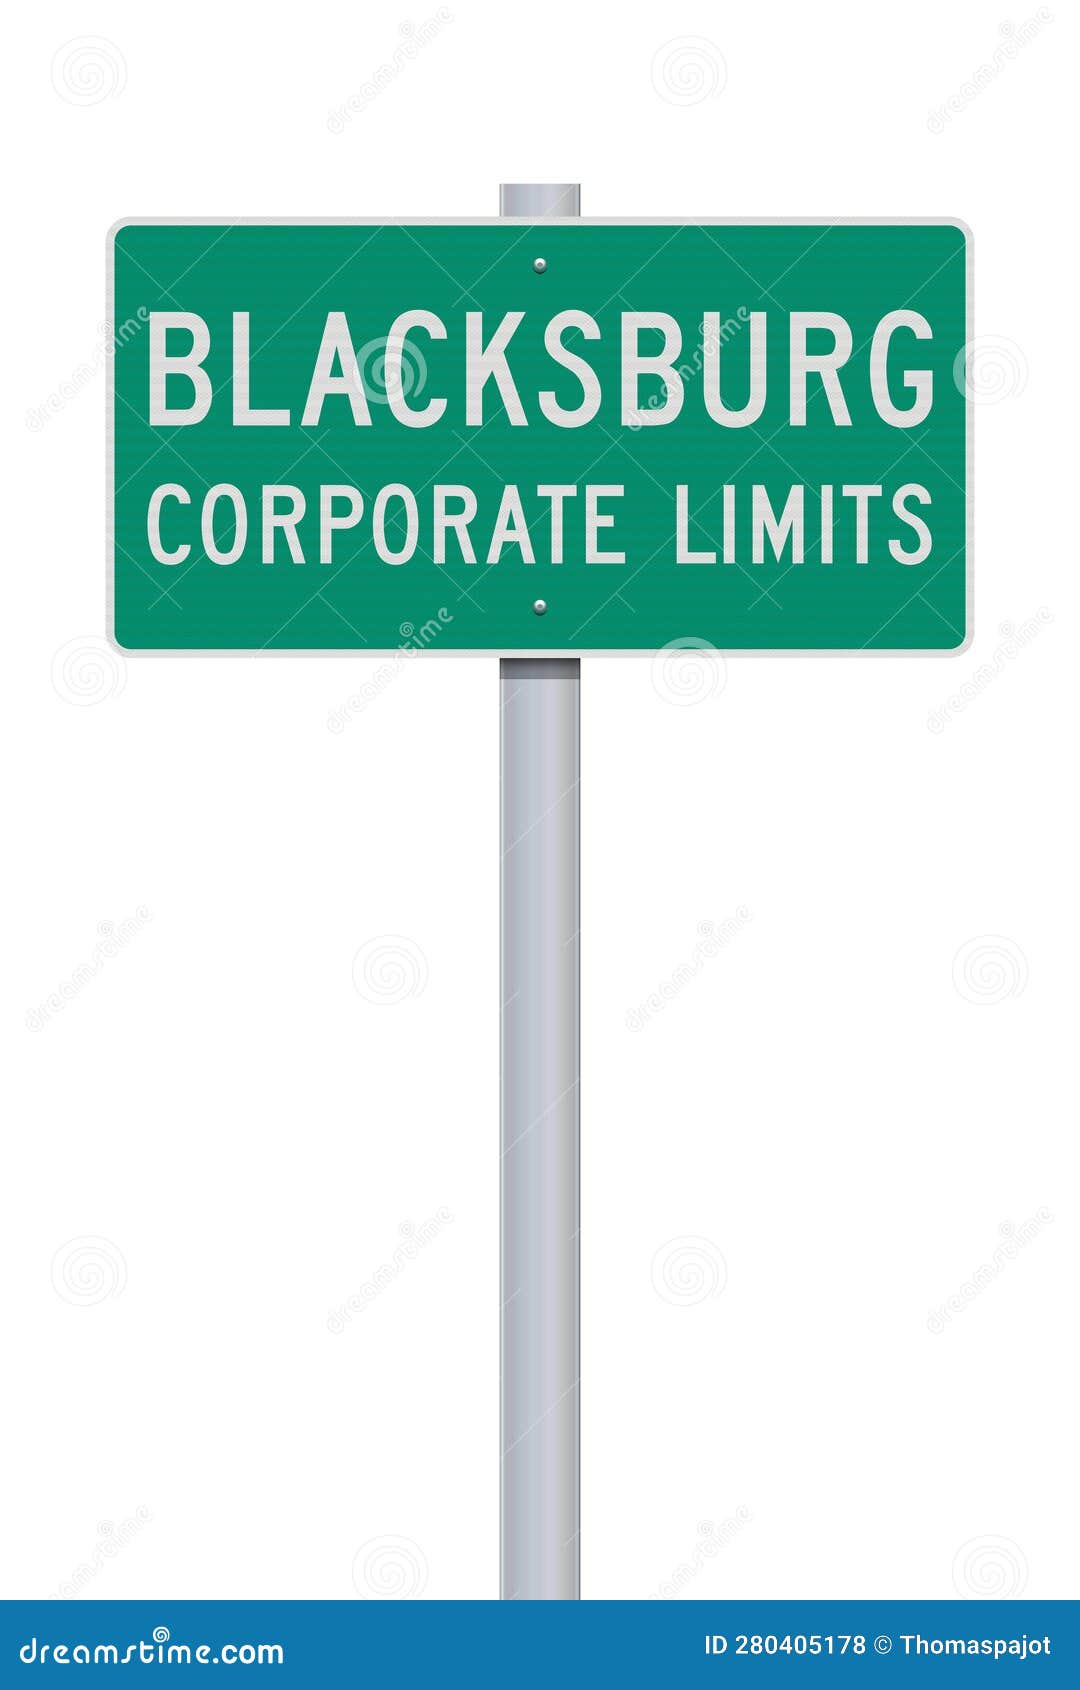 blacksburg corporate limits road sign